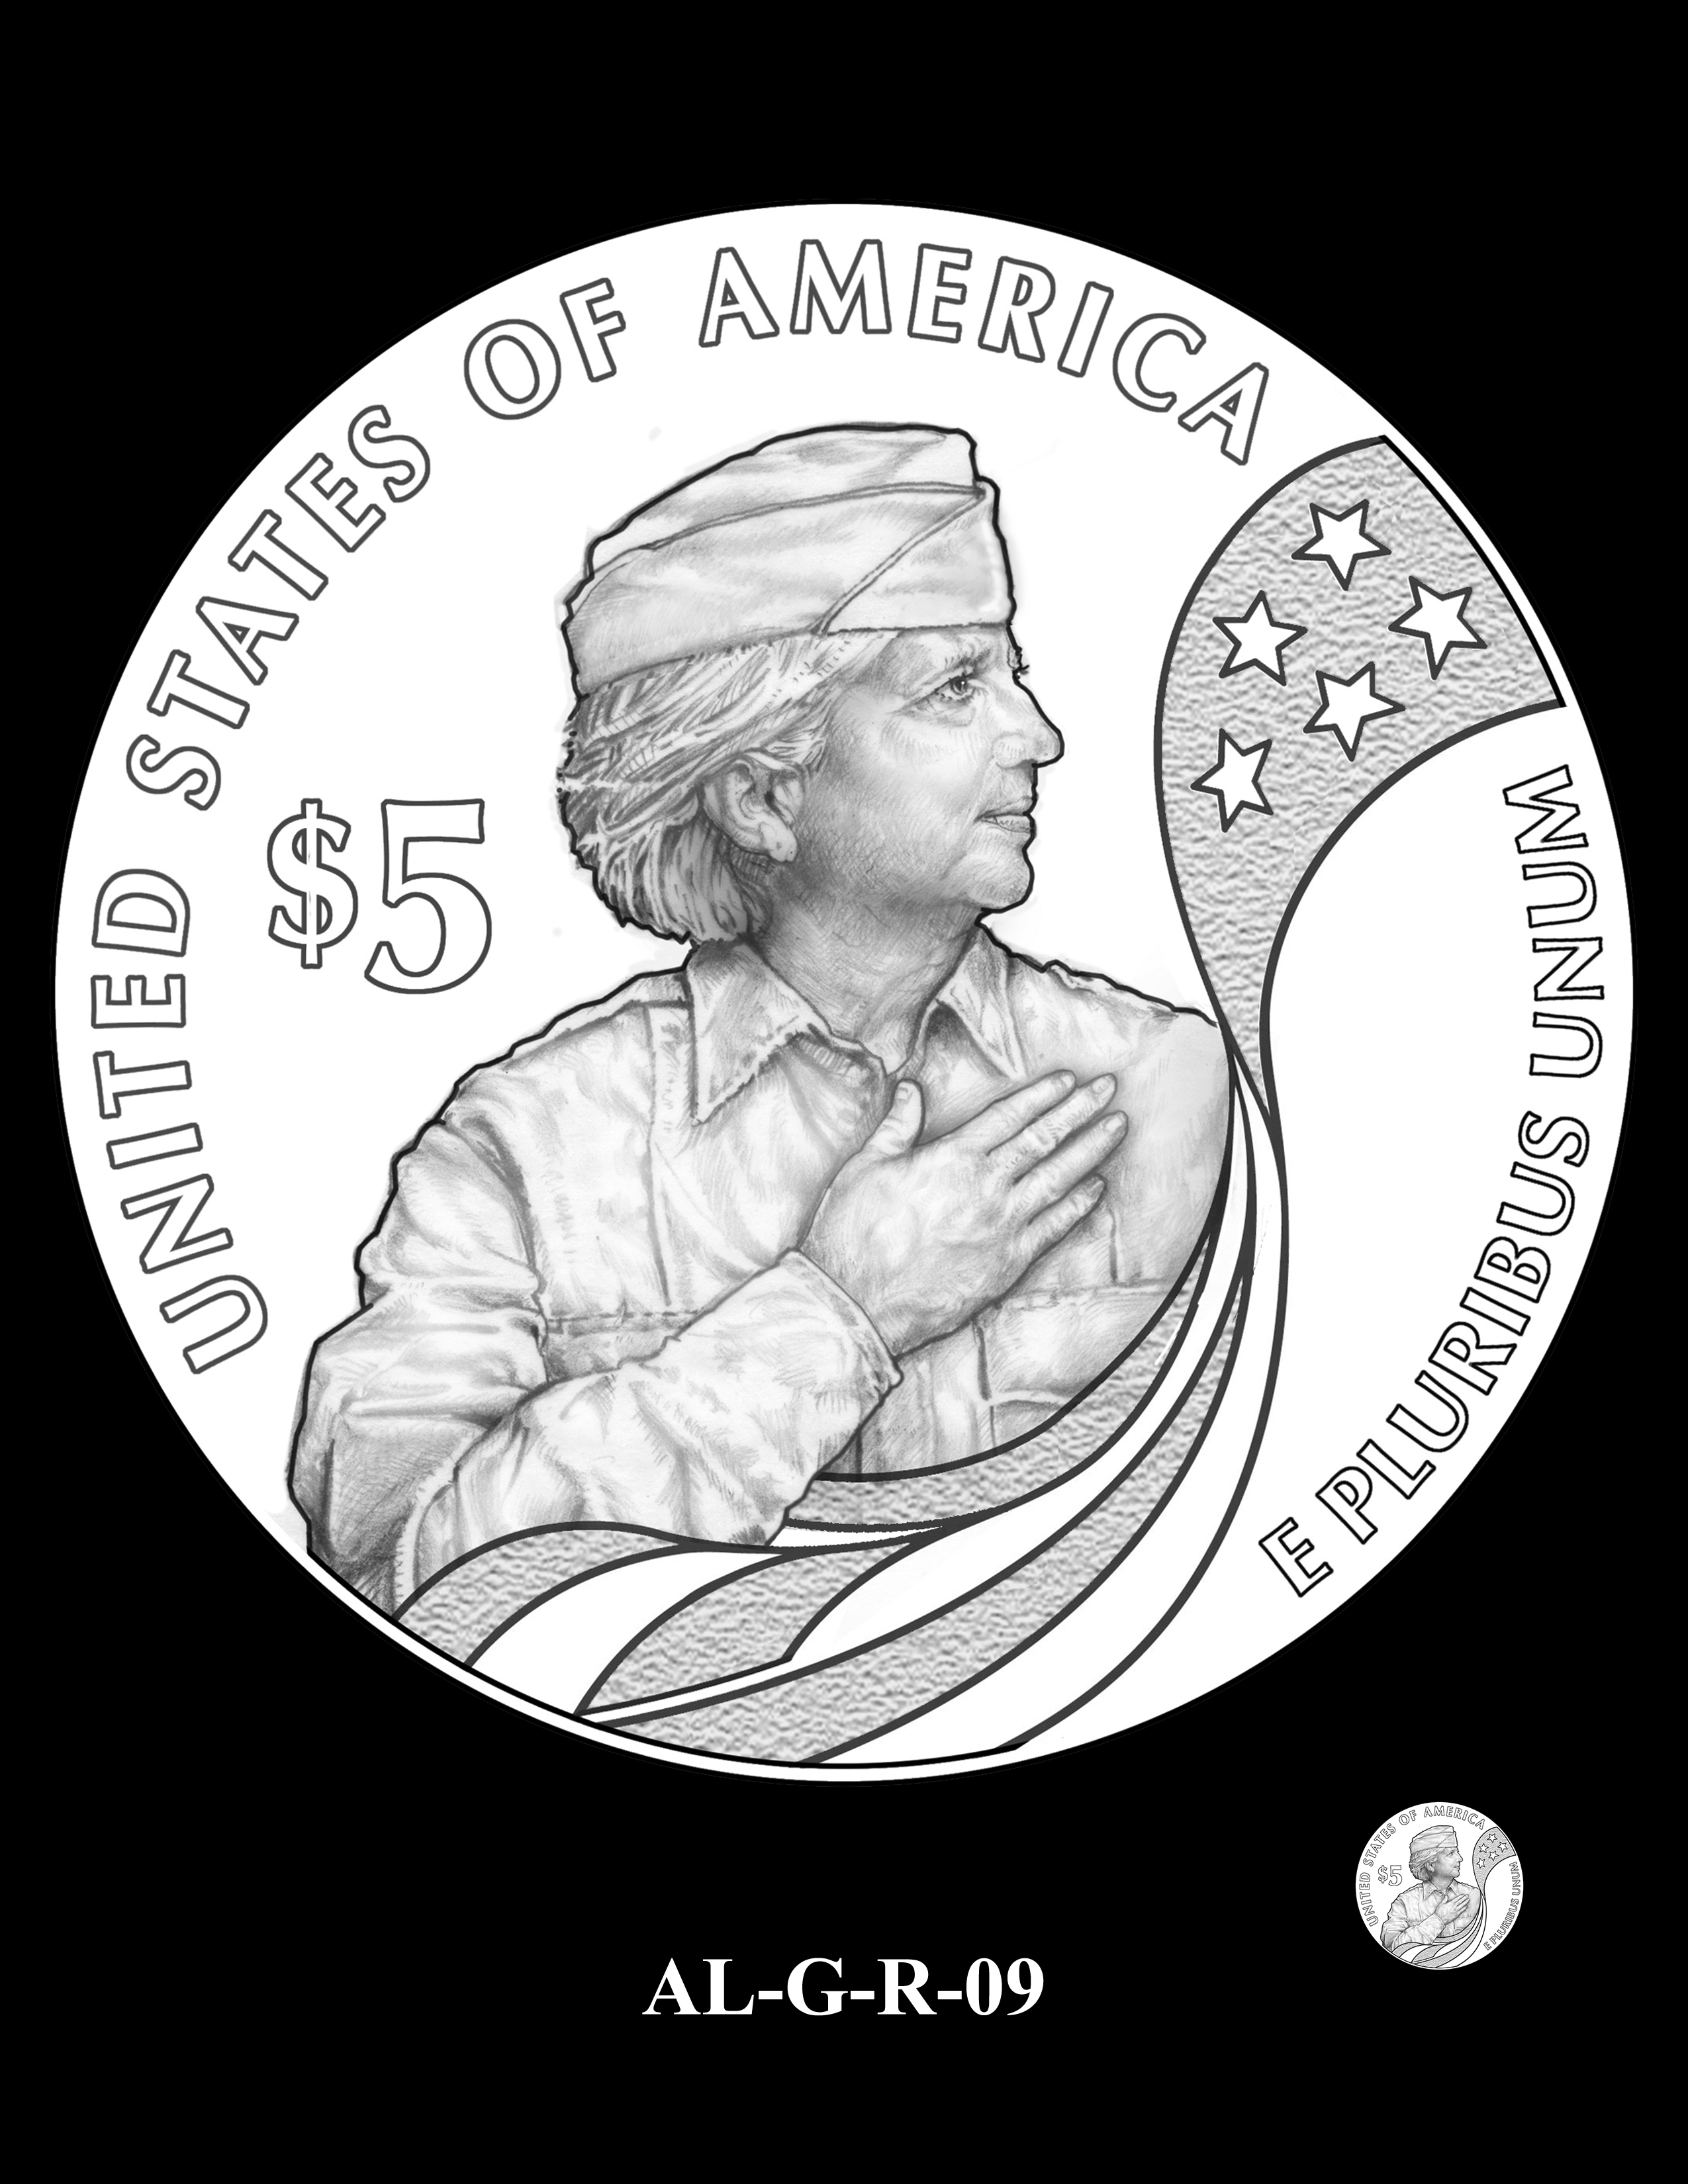 AL-G-R-09 -- 2019 American Legion 100th Anniversary Commemorative Coin Program - Gold Reverse